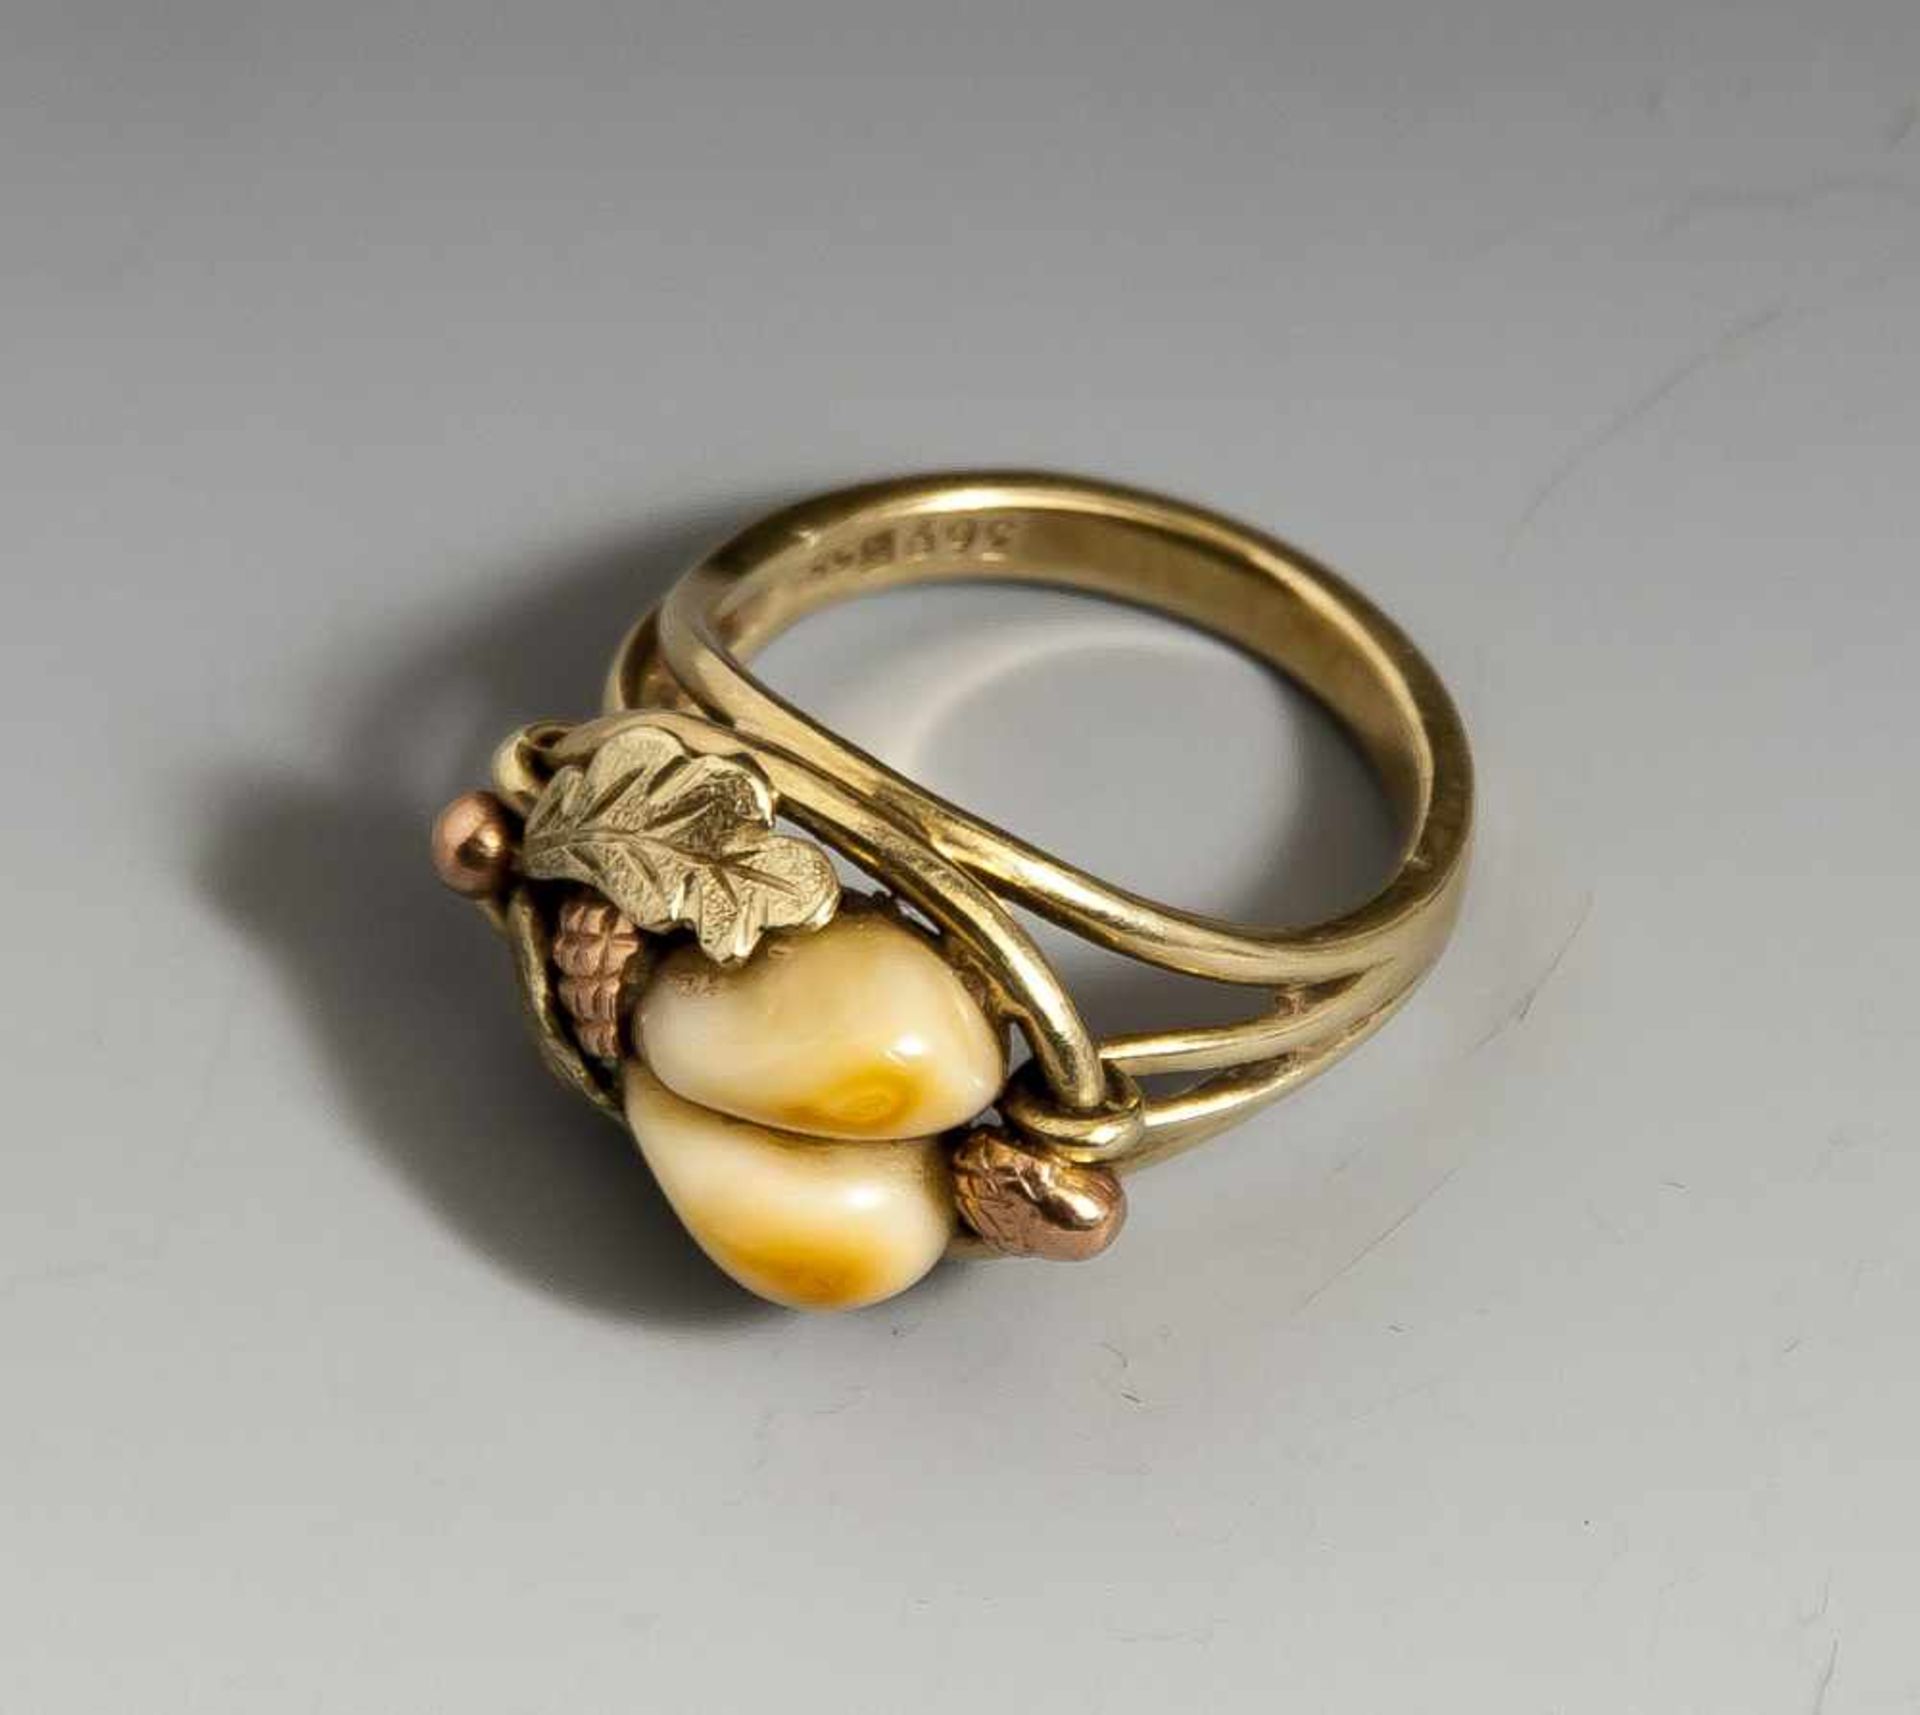 Ring mit Hirschgrandeln, Gelbgold/ Rosegold 585, ovaler Ringkopf mit Eichenlaubdekor, ausgefasst mit